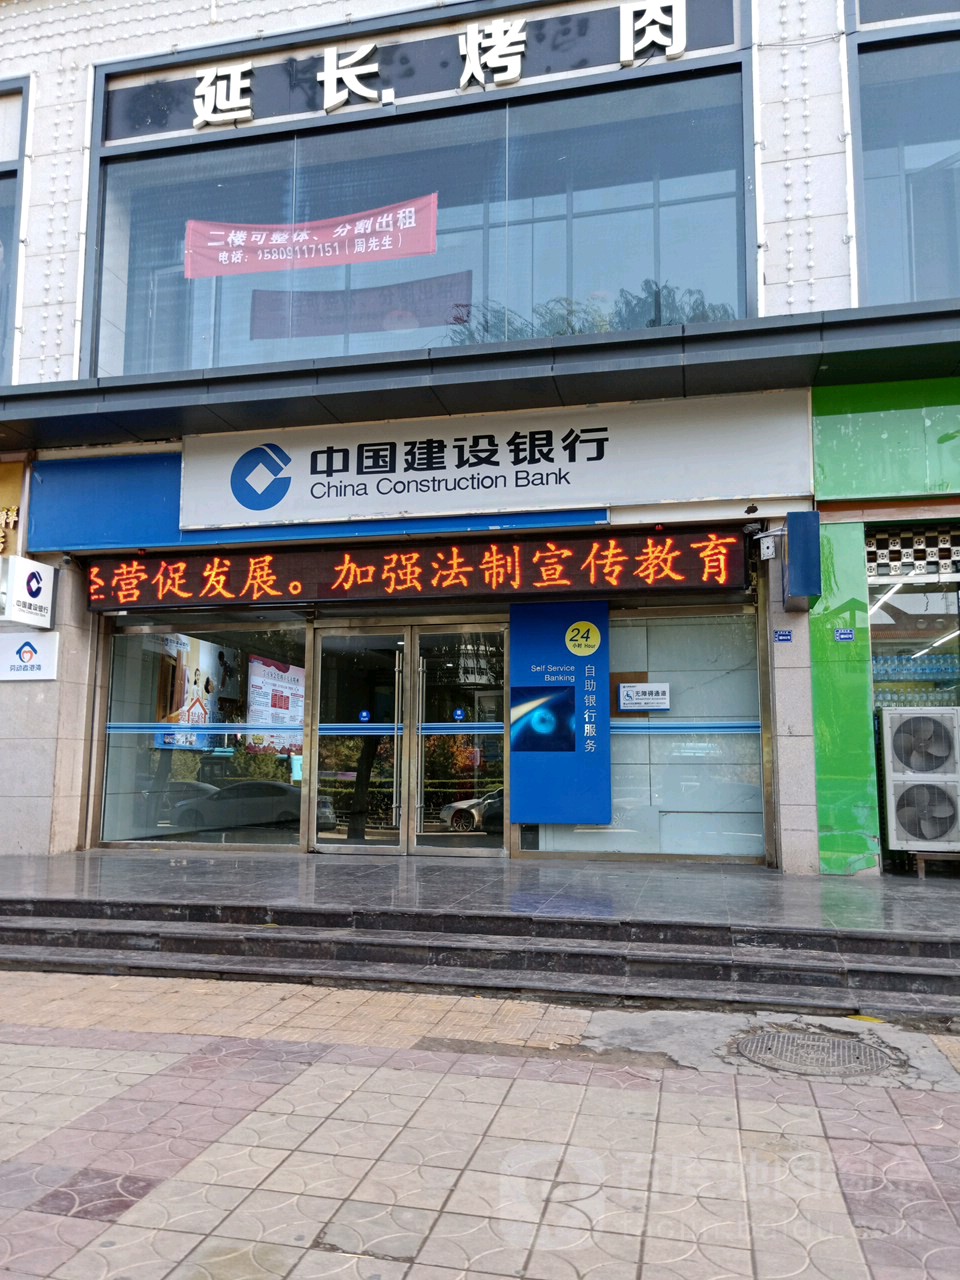 中國建設銀行24小時自助銀行(雙擁大道店)